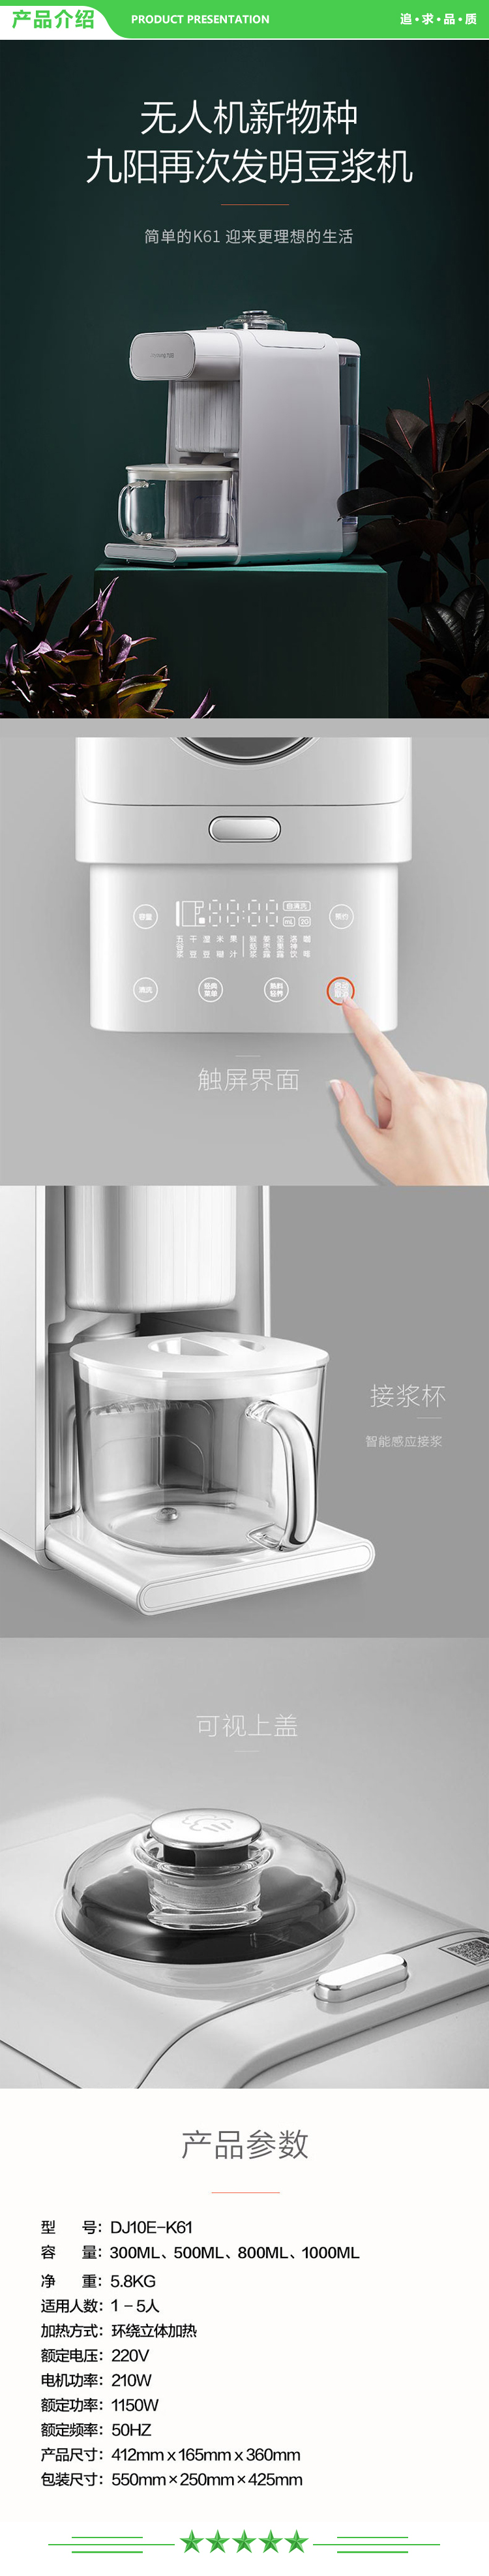 九阳 Joyoung DJ10E-K61 破壁机 无人豆浆机多功能加热家用全自动豆浆免洗咖啡智能.jpg